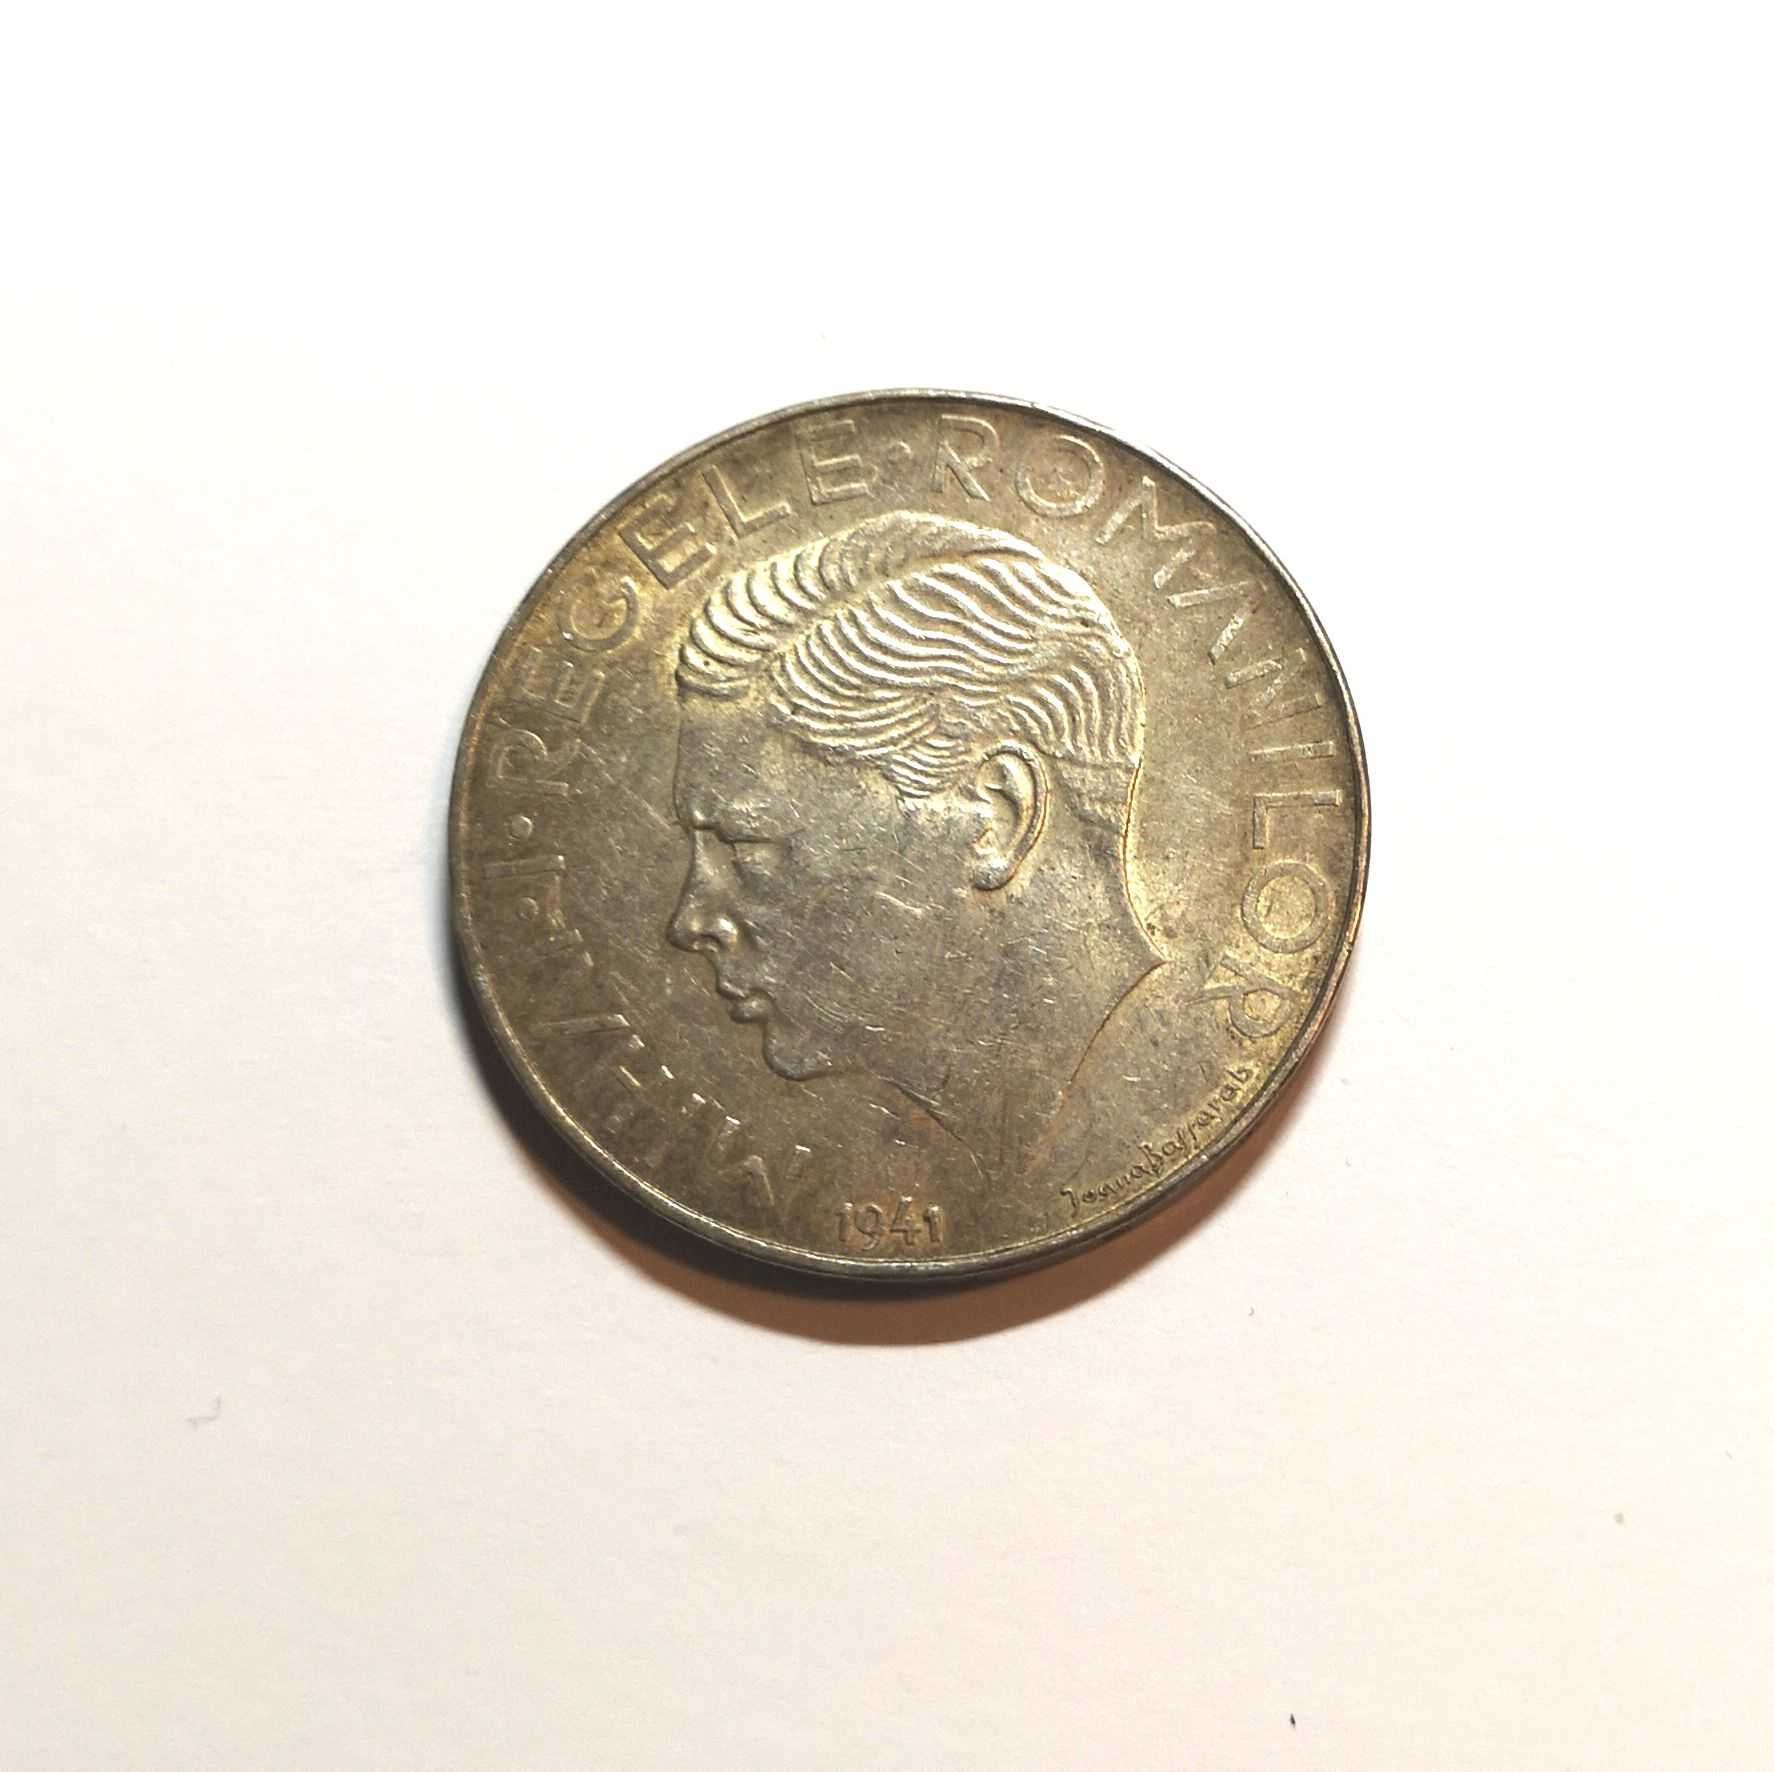 Vand moneda din argint - 500 lei - 1941